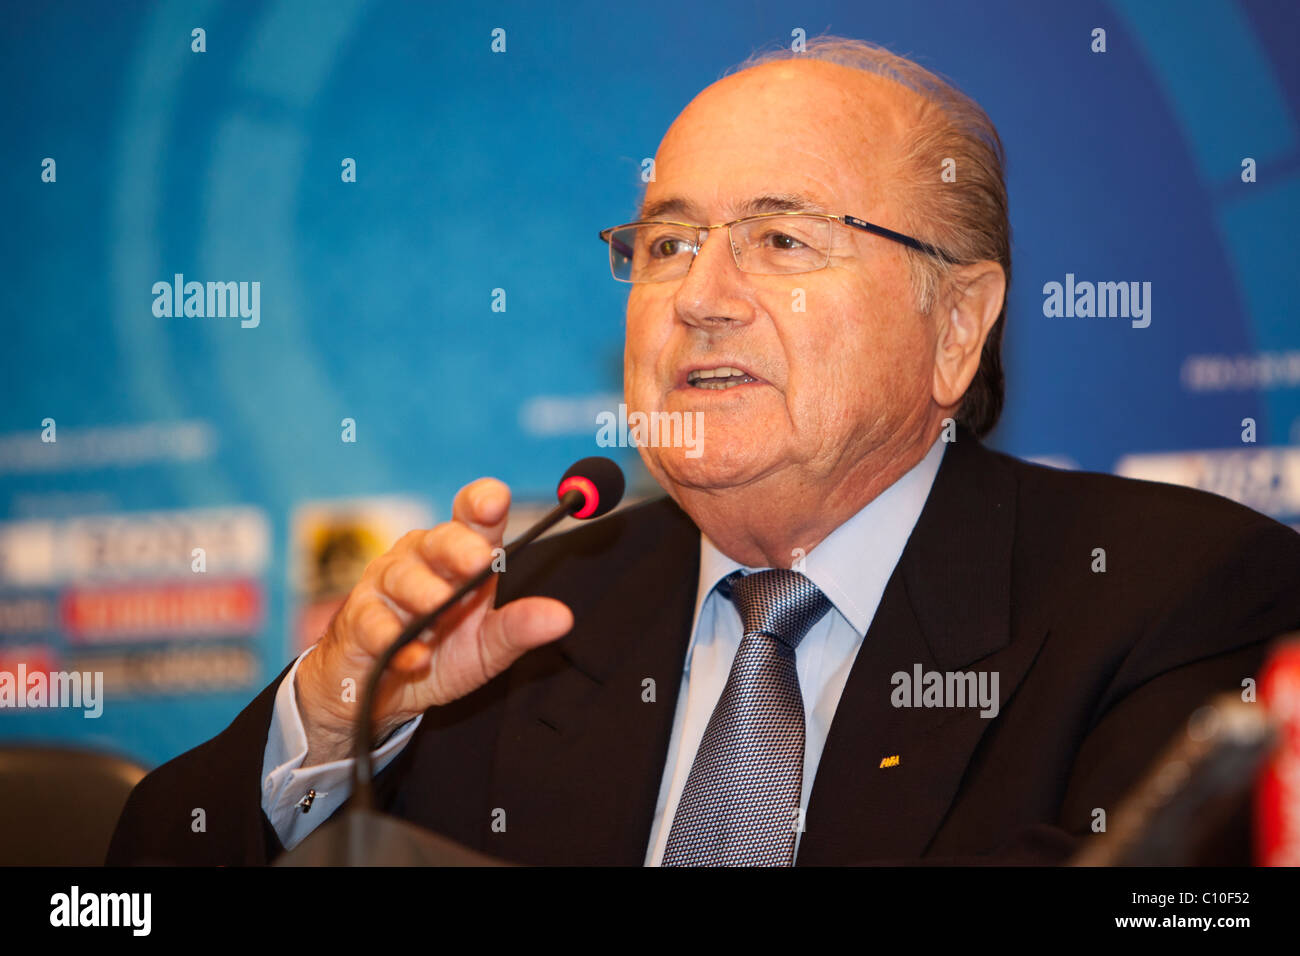 Le Président de la FIFA, Sepp Blatter, aborde une question lors d'une conférence de presse avant la Coupe du Monde U-20 2009 Championnat de soccer. Banque D'Images